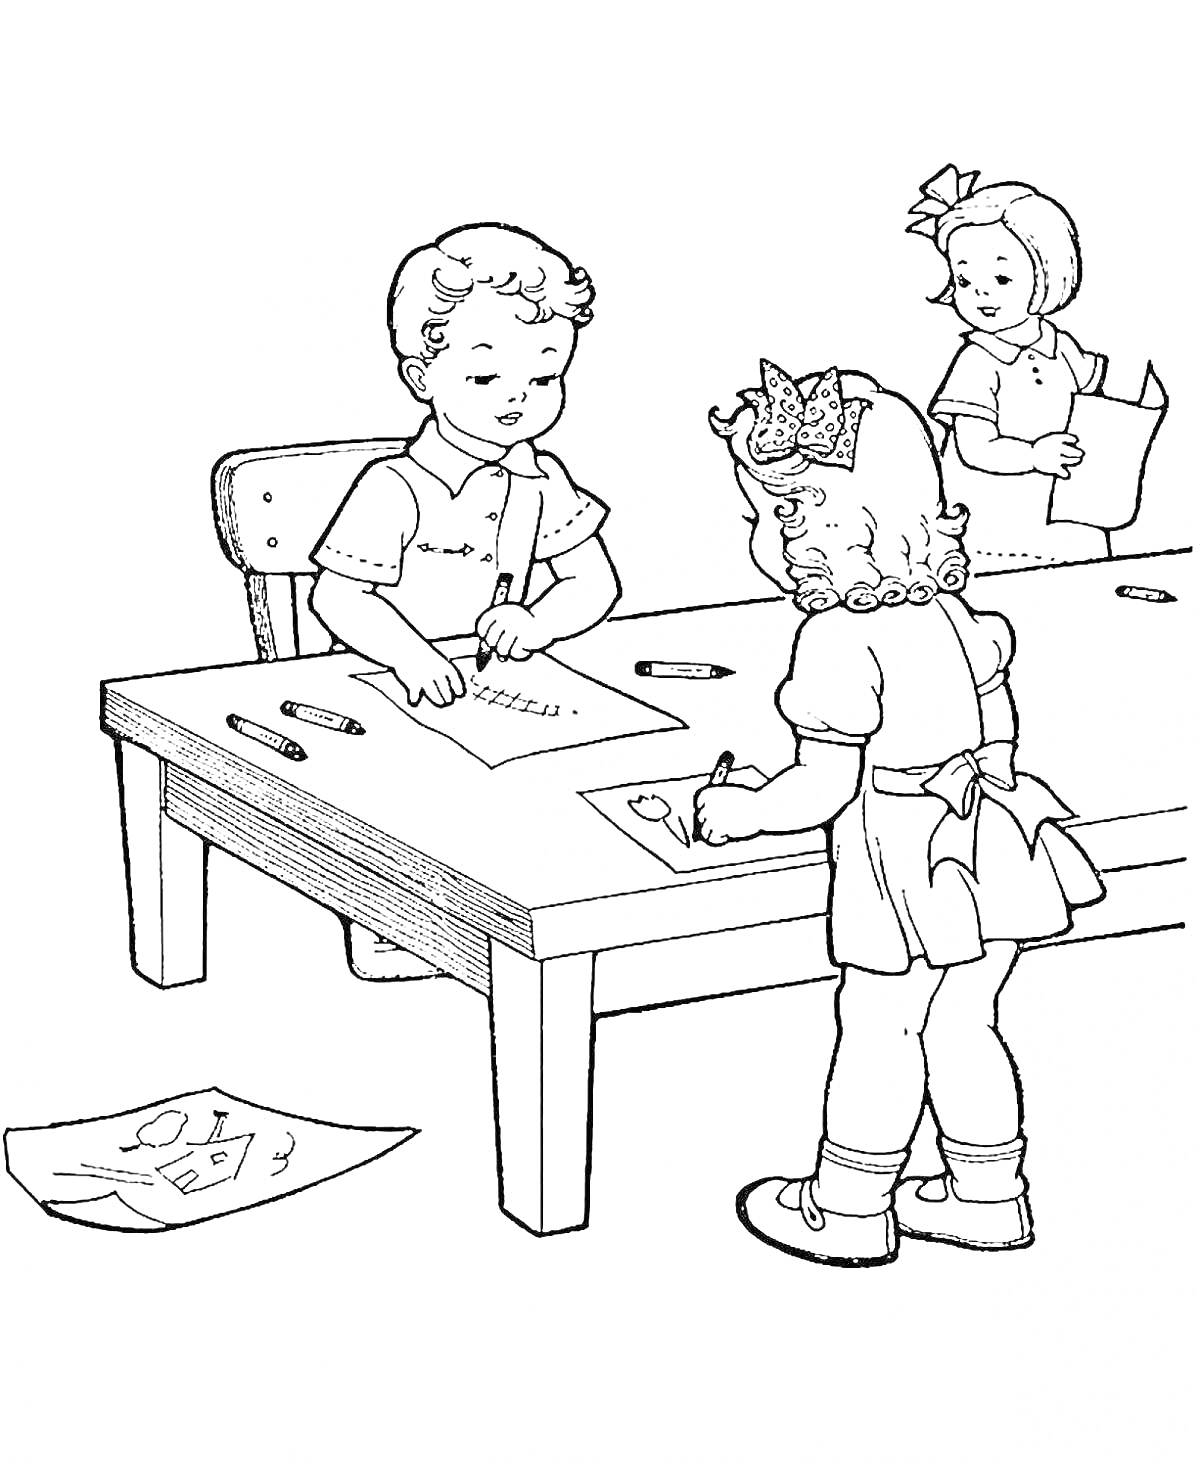 Раскраска Дети рисуют в классе - мальчик и девочка сидят за столом, девочка стоит, бумага и карандаши на столе, рисунок на полу